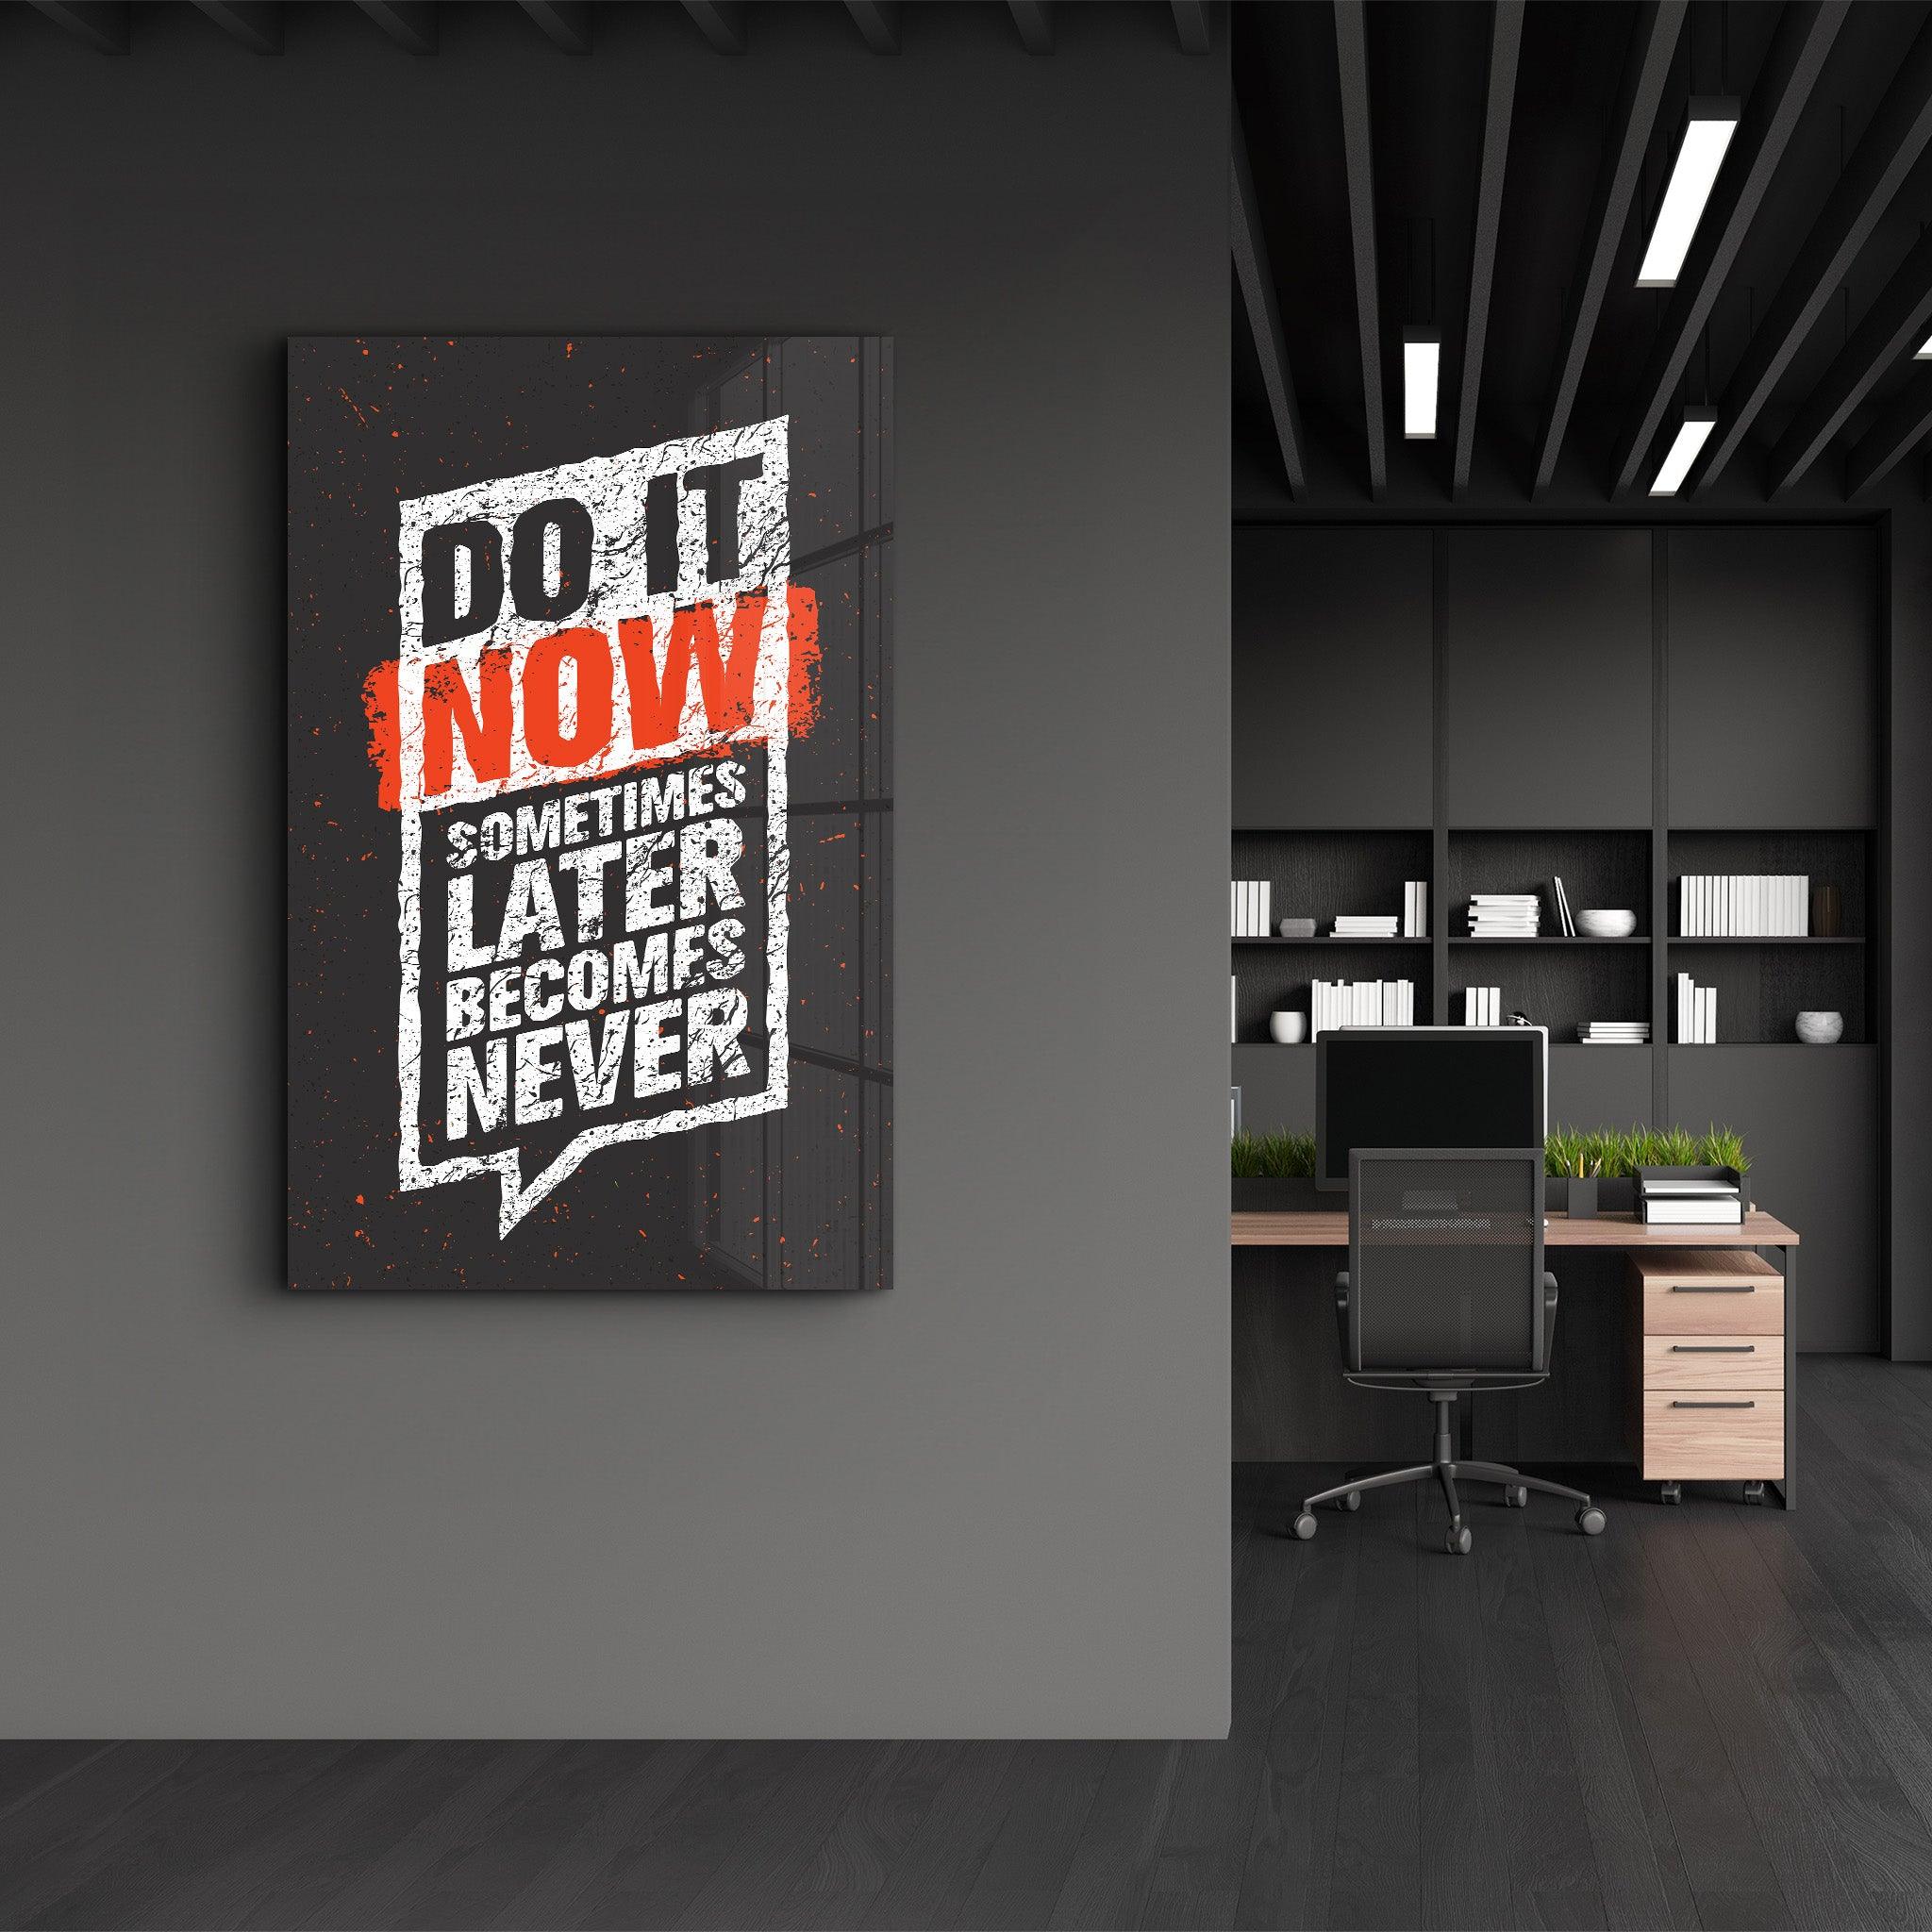 Do It Now | Motivational Glass Wall Art - ArtDesigna Glass Printing Wall Art